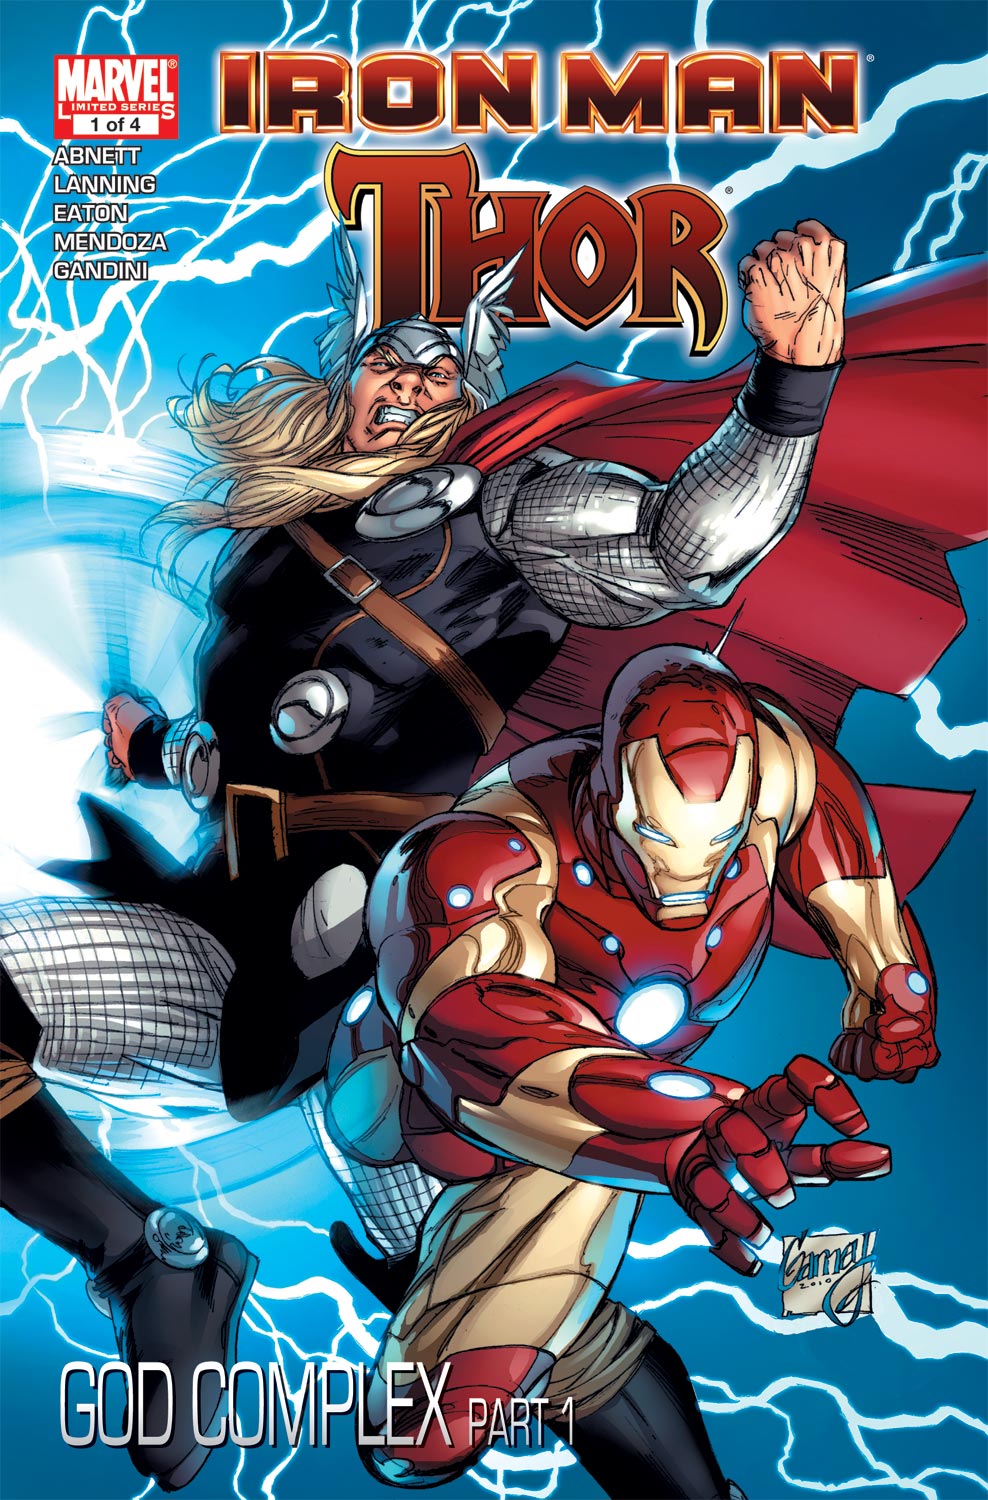 Iron Man/Thor (2010) #1